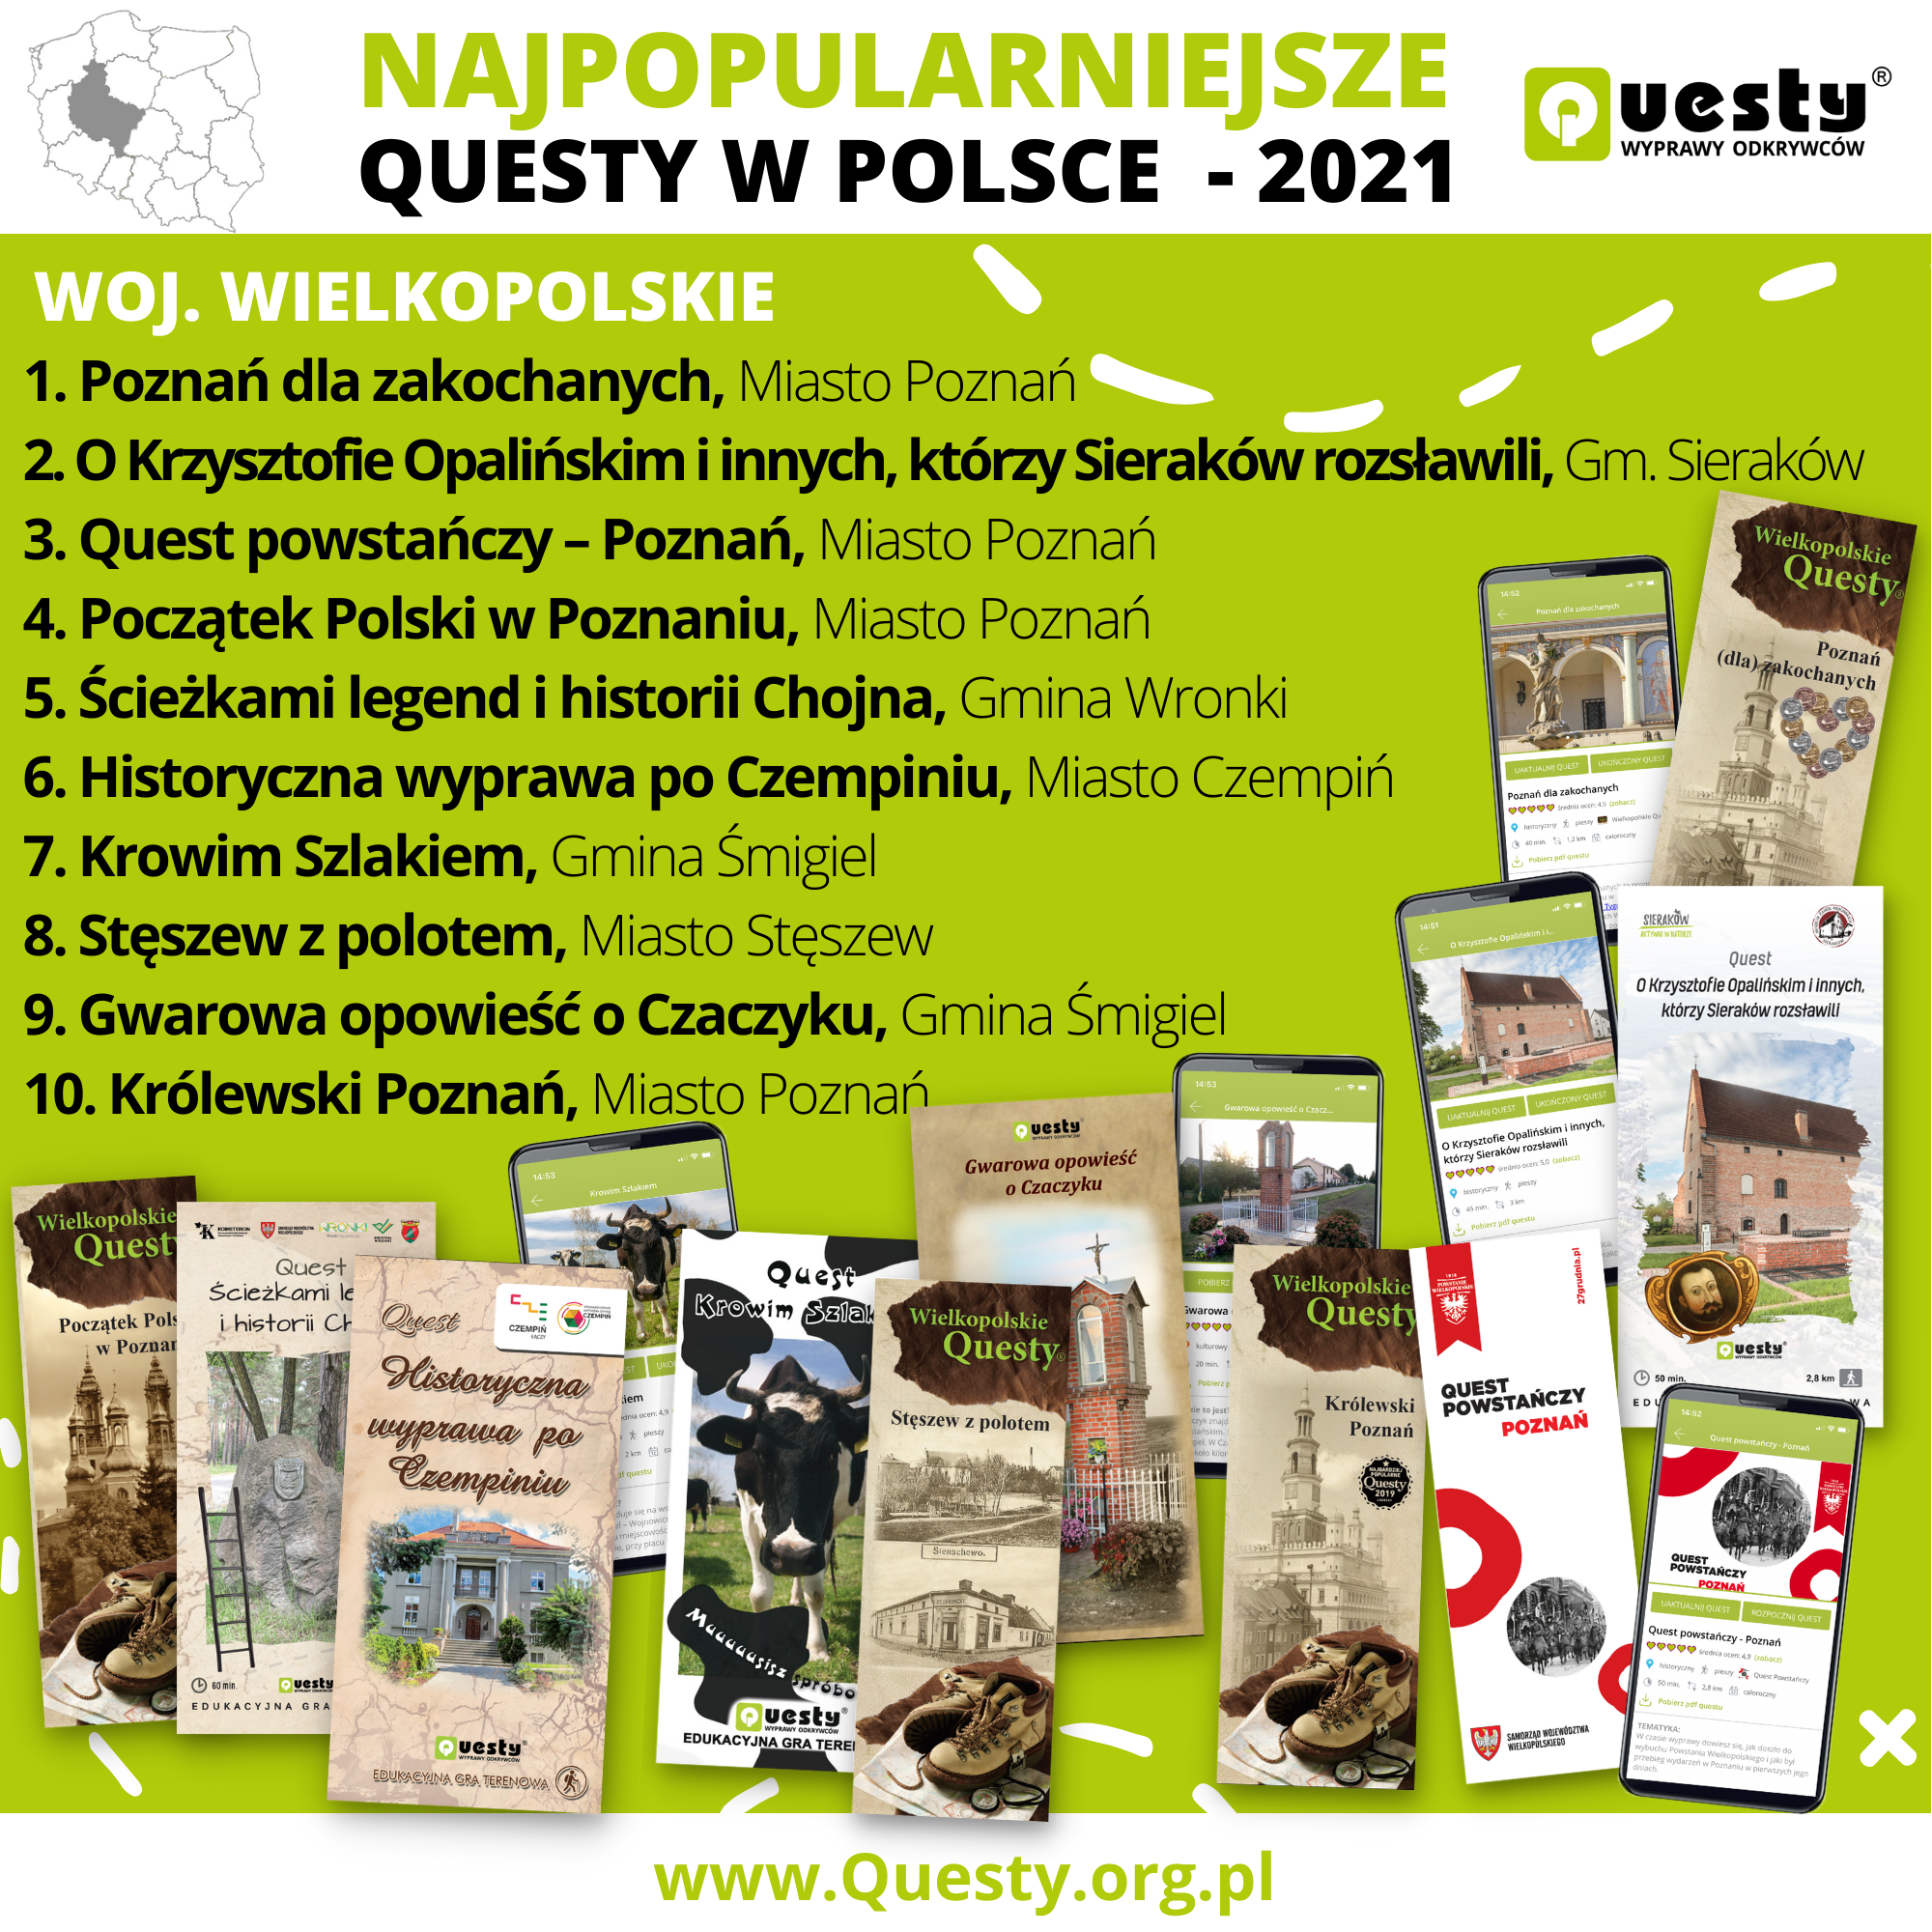 Najpopularniejsze questy w Polsce 2021 - woj. wielkopolskie